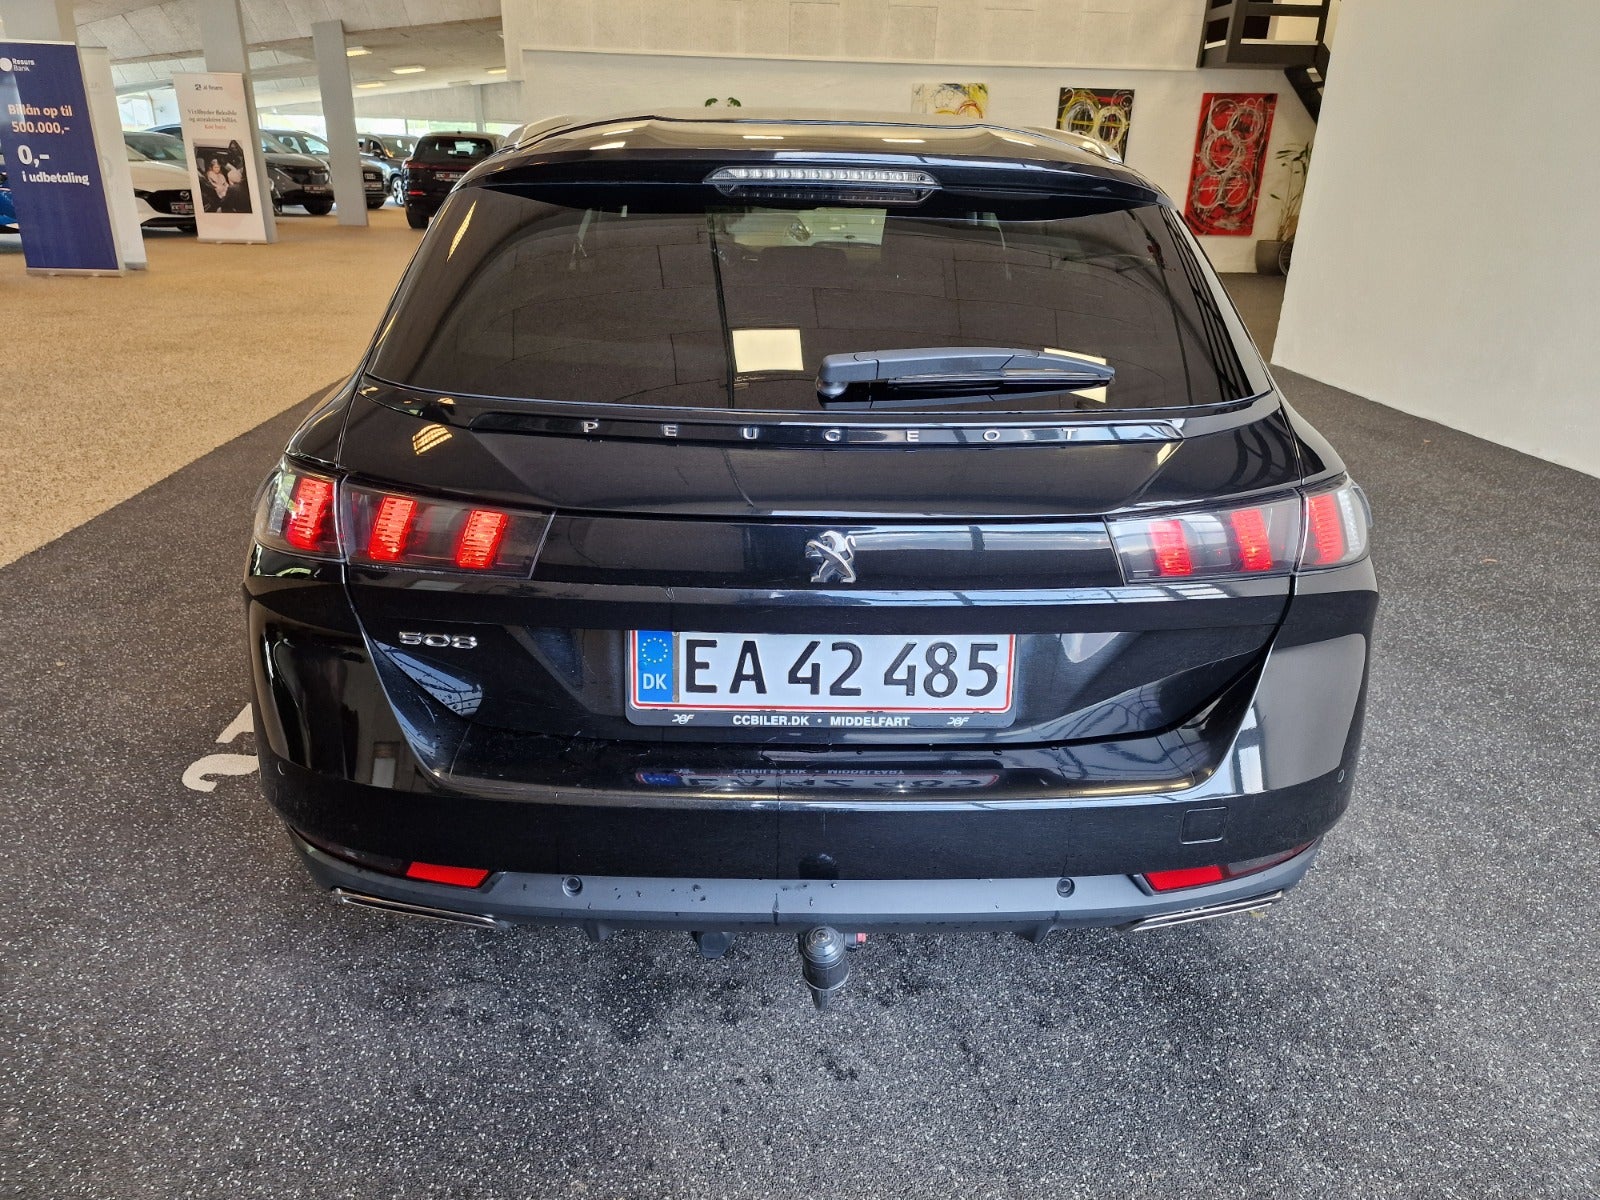 Peugeot 508 2019